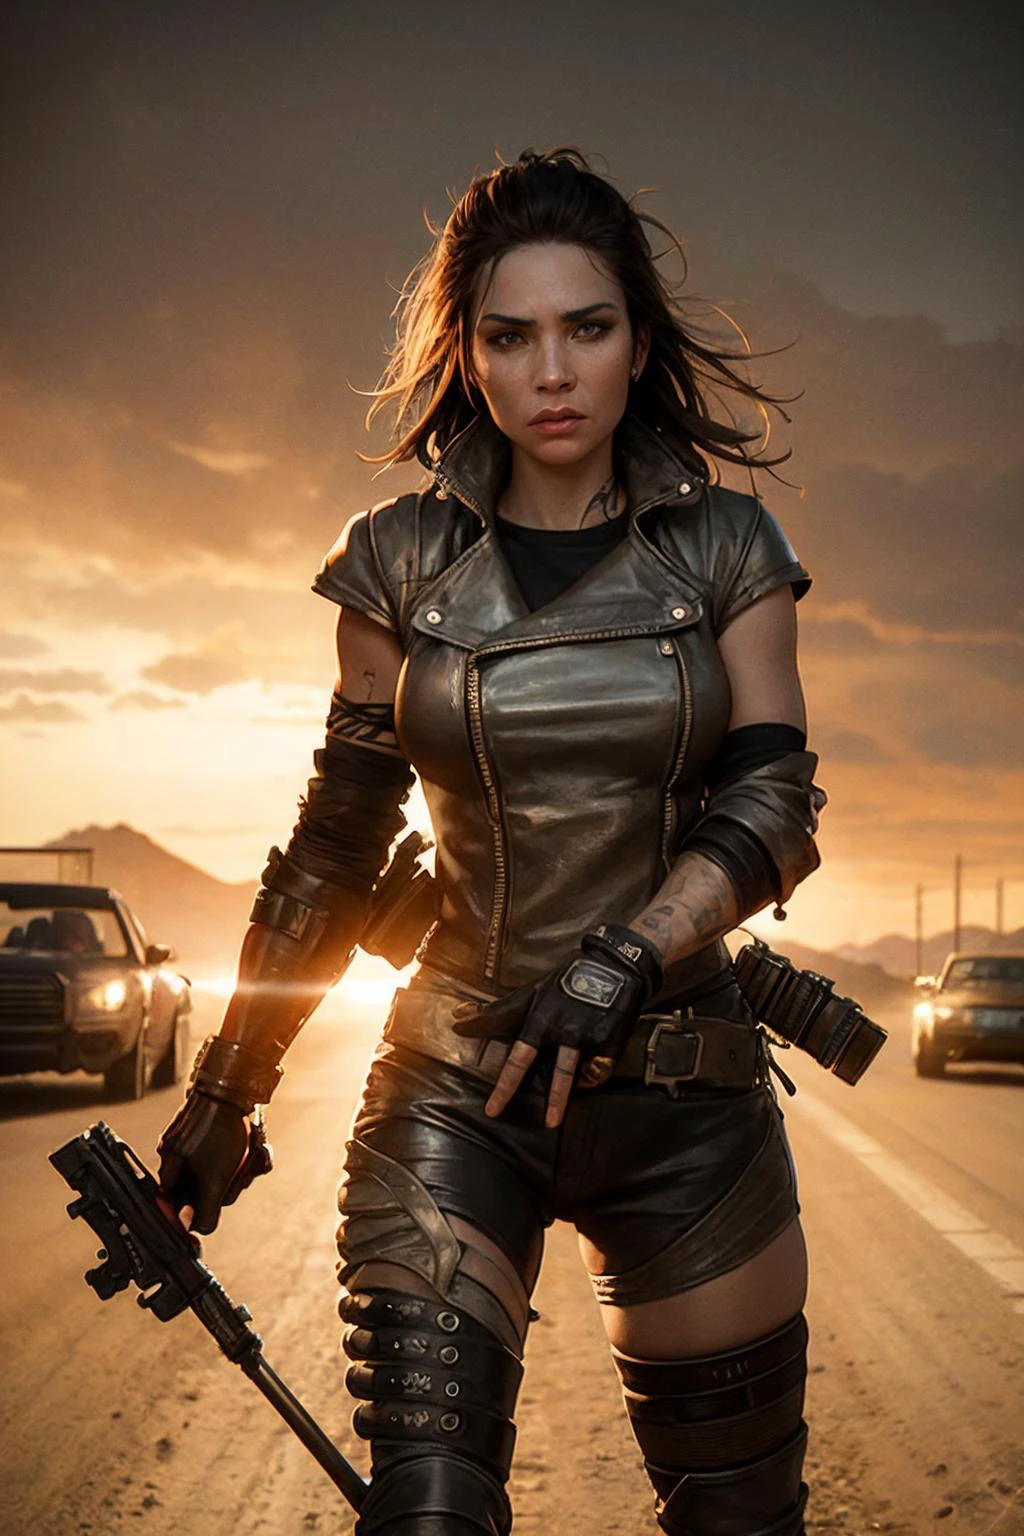 女性摩托车手团伙. 武装和危险. 疯狂的麦克斯艺术风格. 电影灯光.